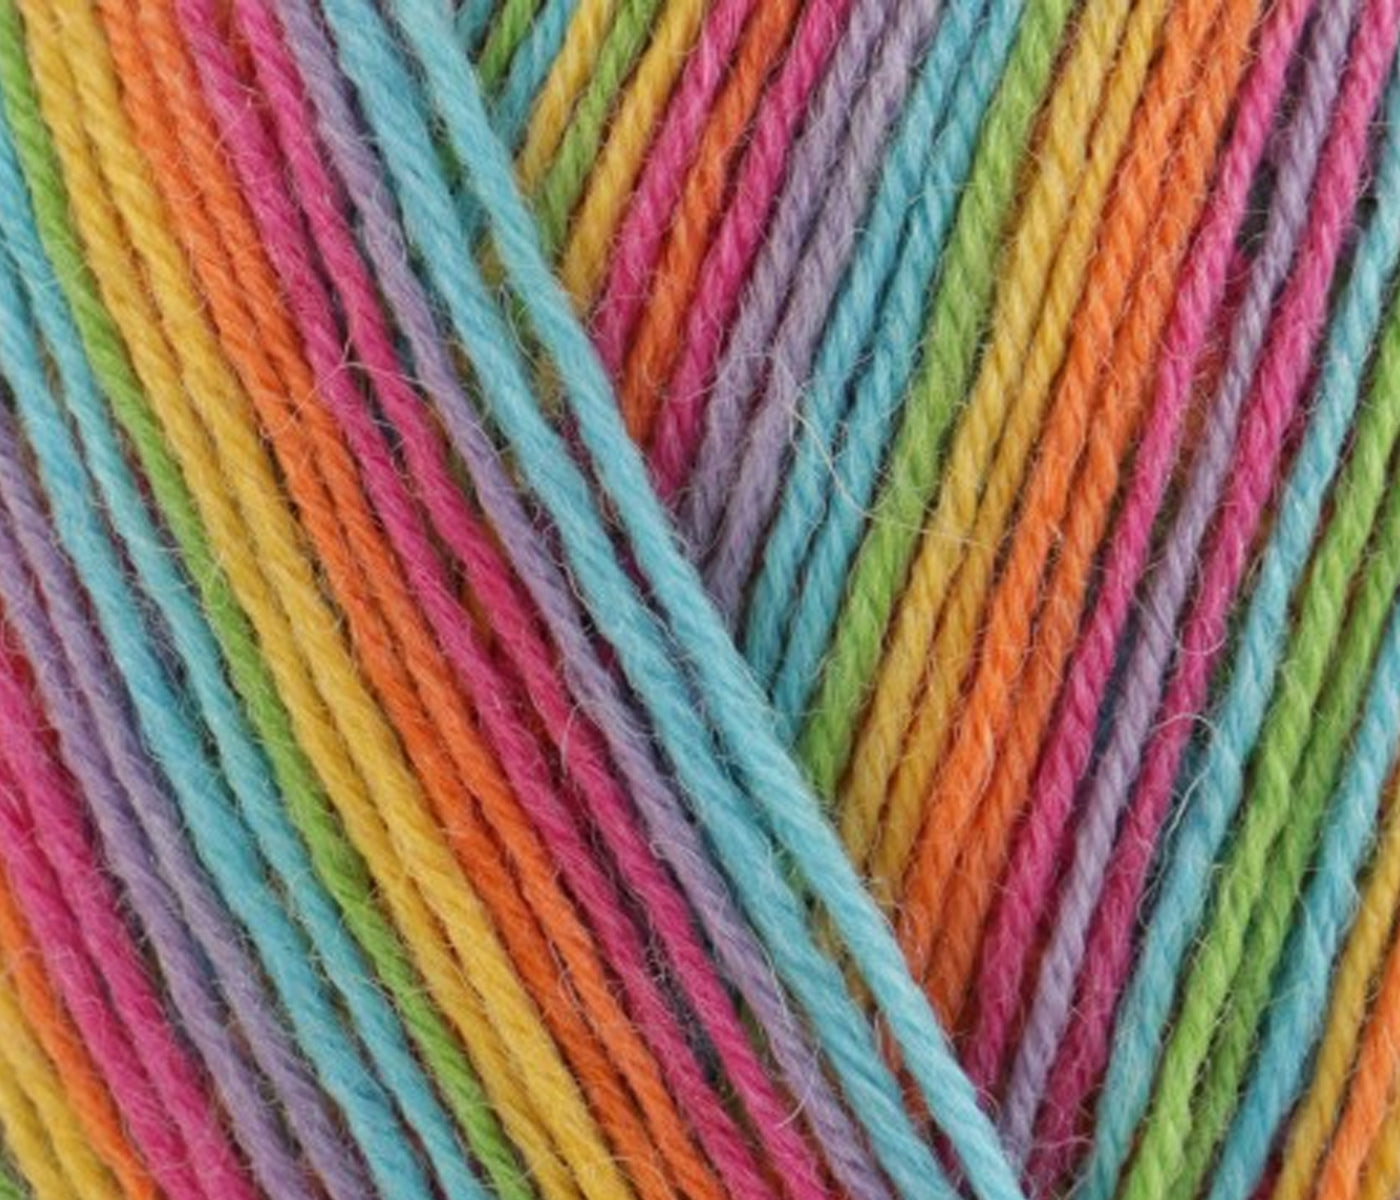 Basic Children's Socks | Knitting Kit